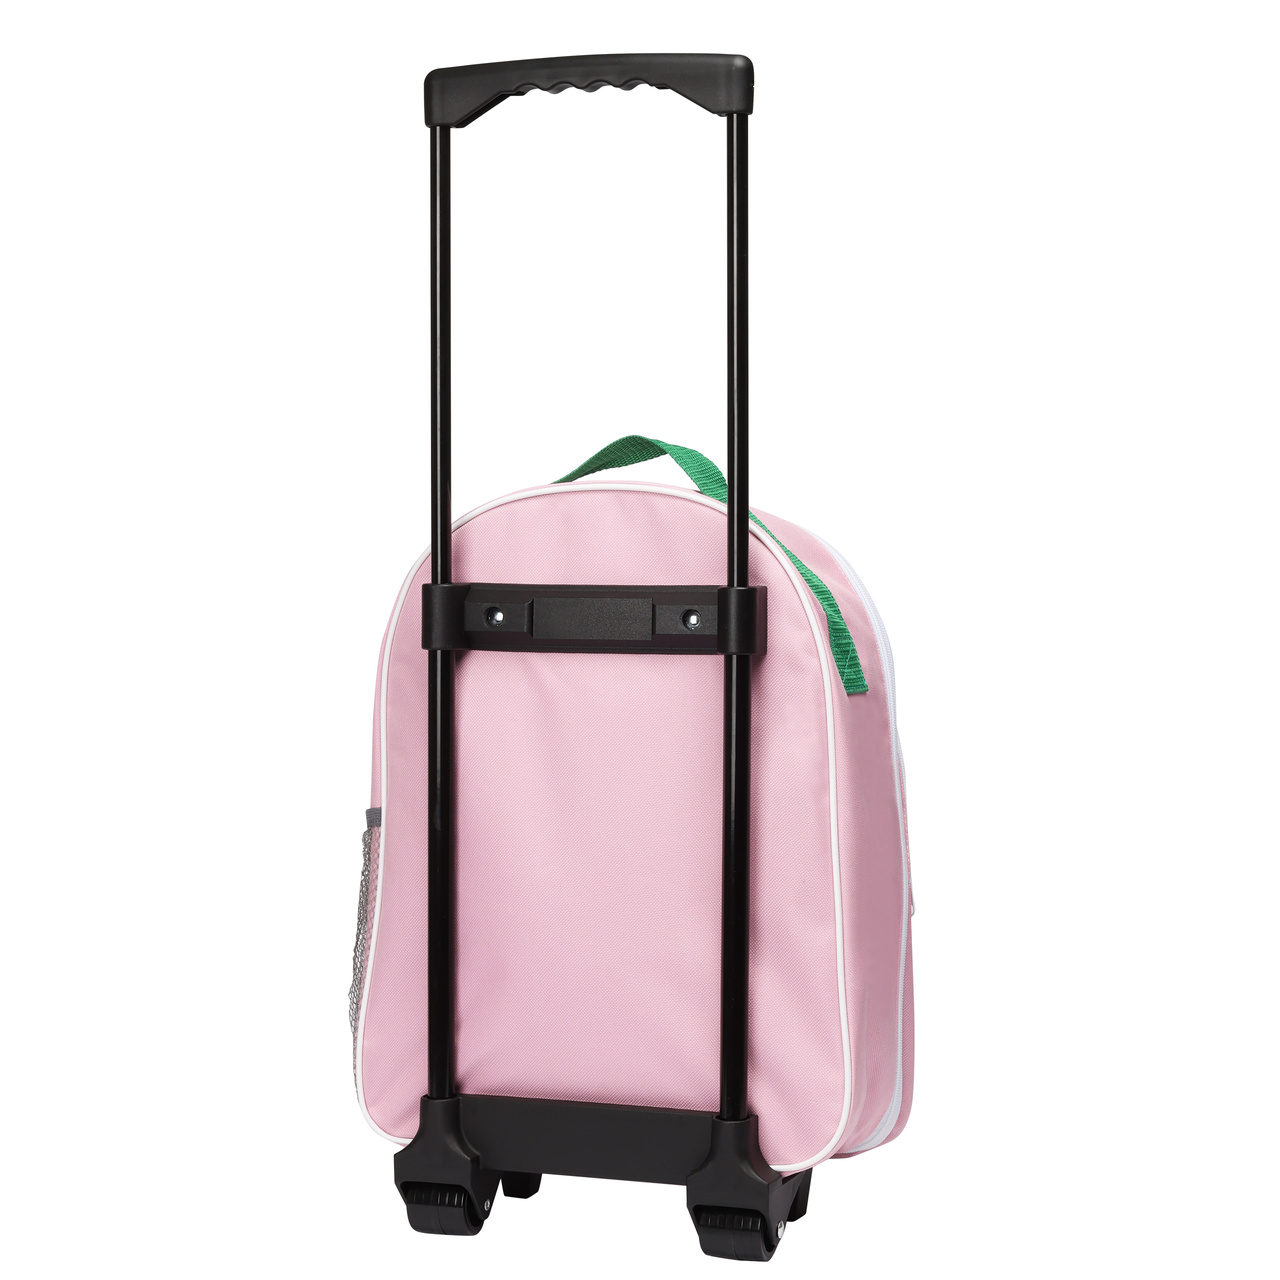 Børnetasker & Accessories pippi børnetaske kuffert lyserød